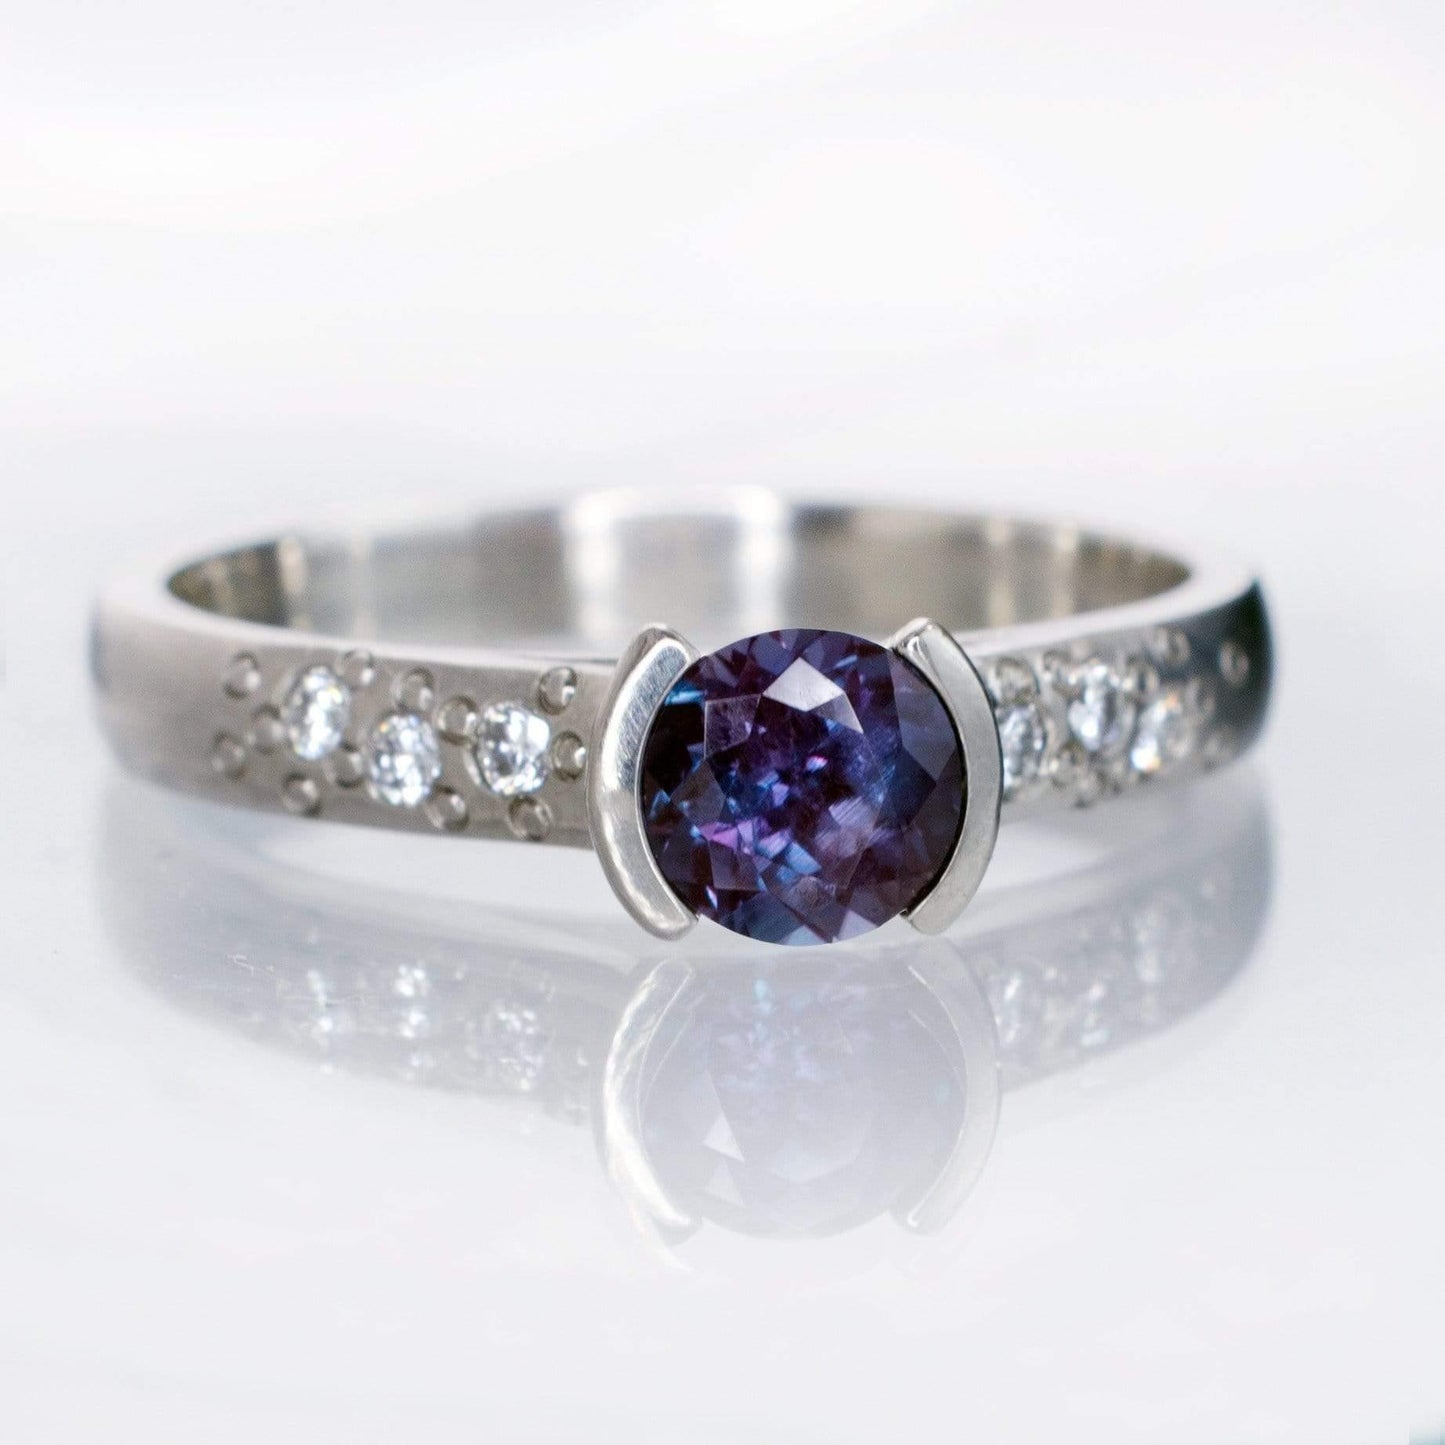 Alexandrite Half Bezel Diamond Star Dust Engagement Ring 5.5mm/~0.78ct Alexandrite / 18kPD White Gold Ring by Nodeform